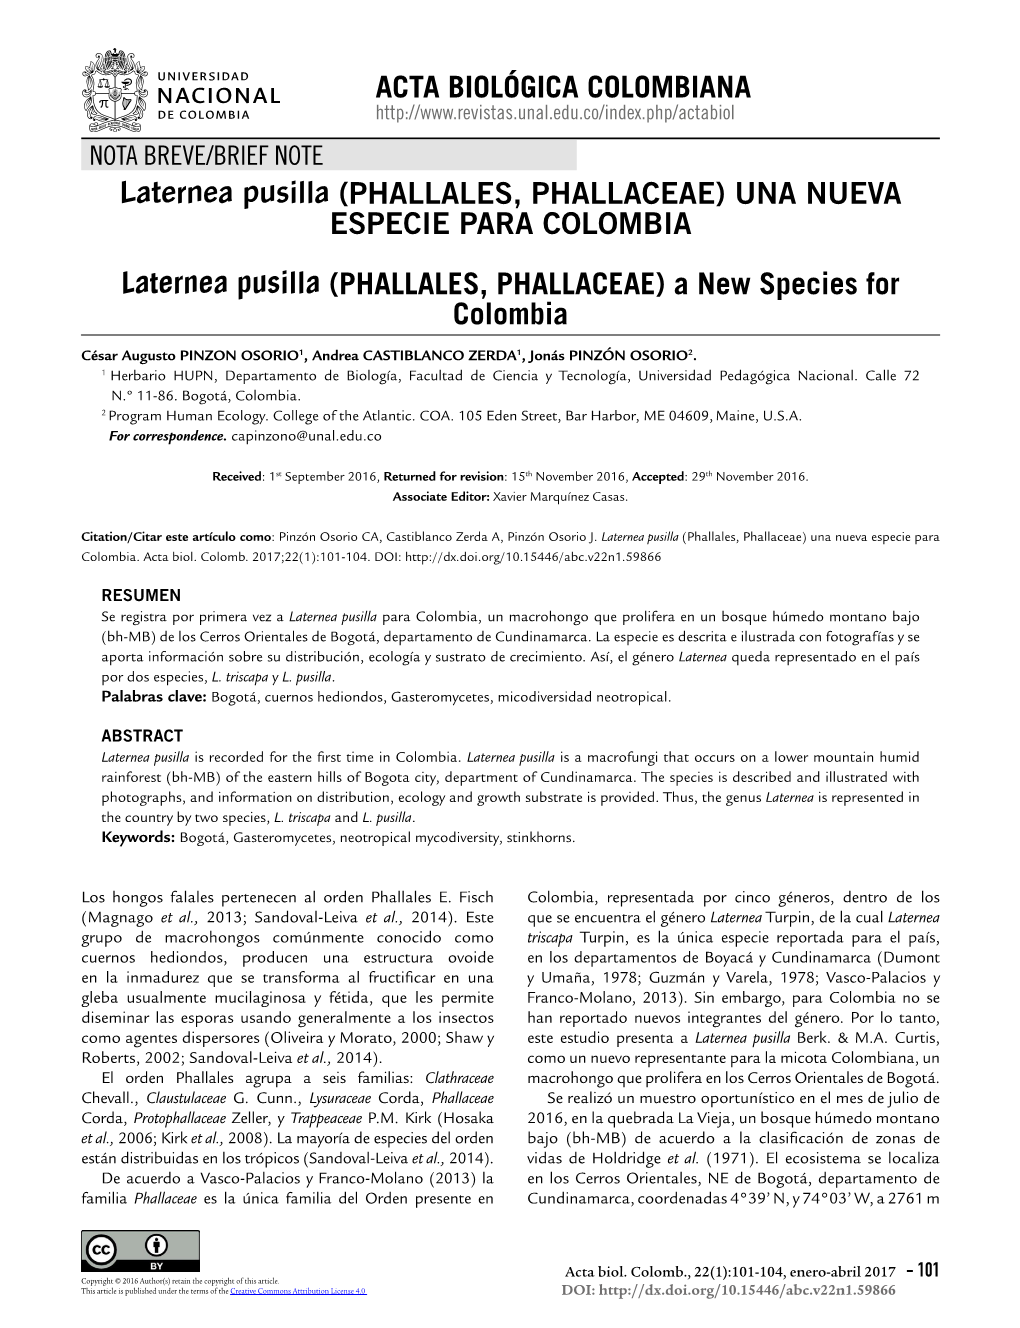 PHALLALES, PHALLACEAE) UNA NUEVA ESPECIE PARA COLOMBIA Laternea Pusilla (PHALLALES, PHALLACEAE) a New Species for Colombia